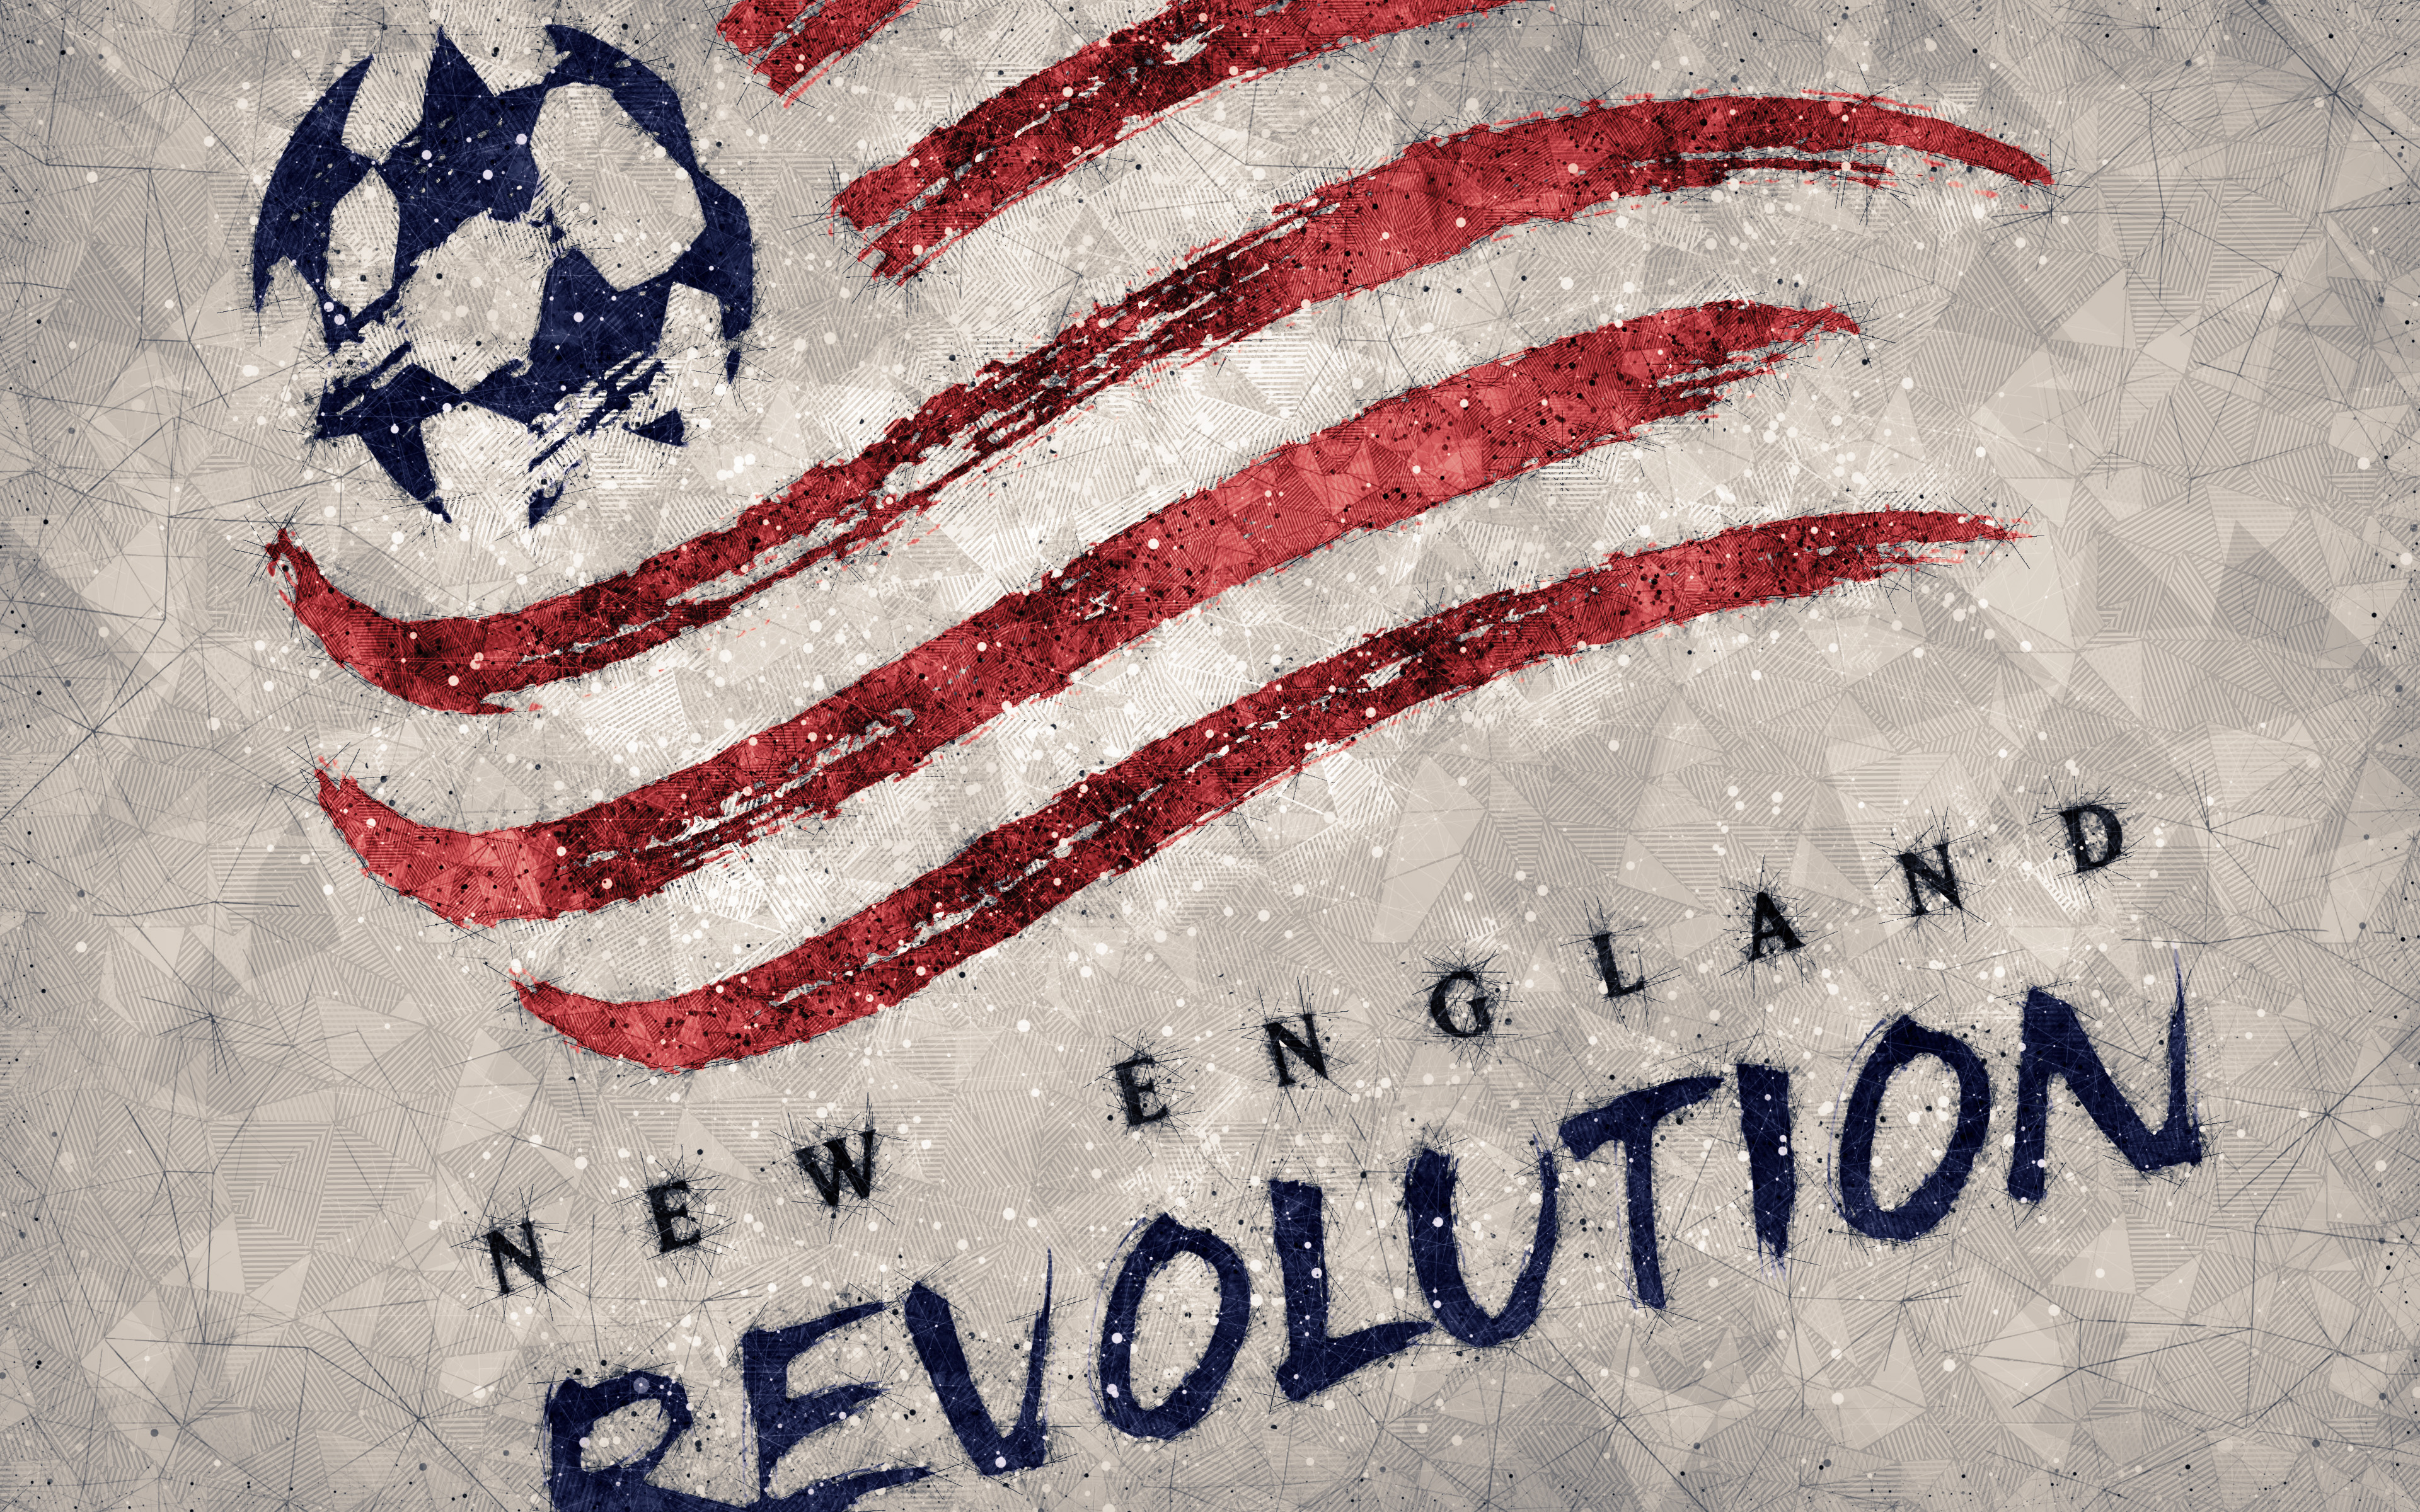 Скачать обои Революция Новой Англии на телефон бесплатно